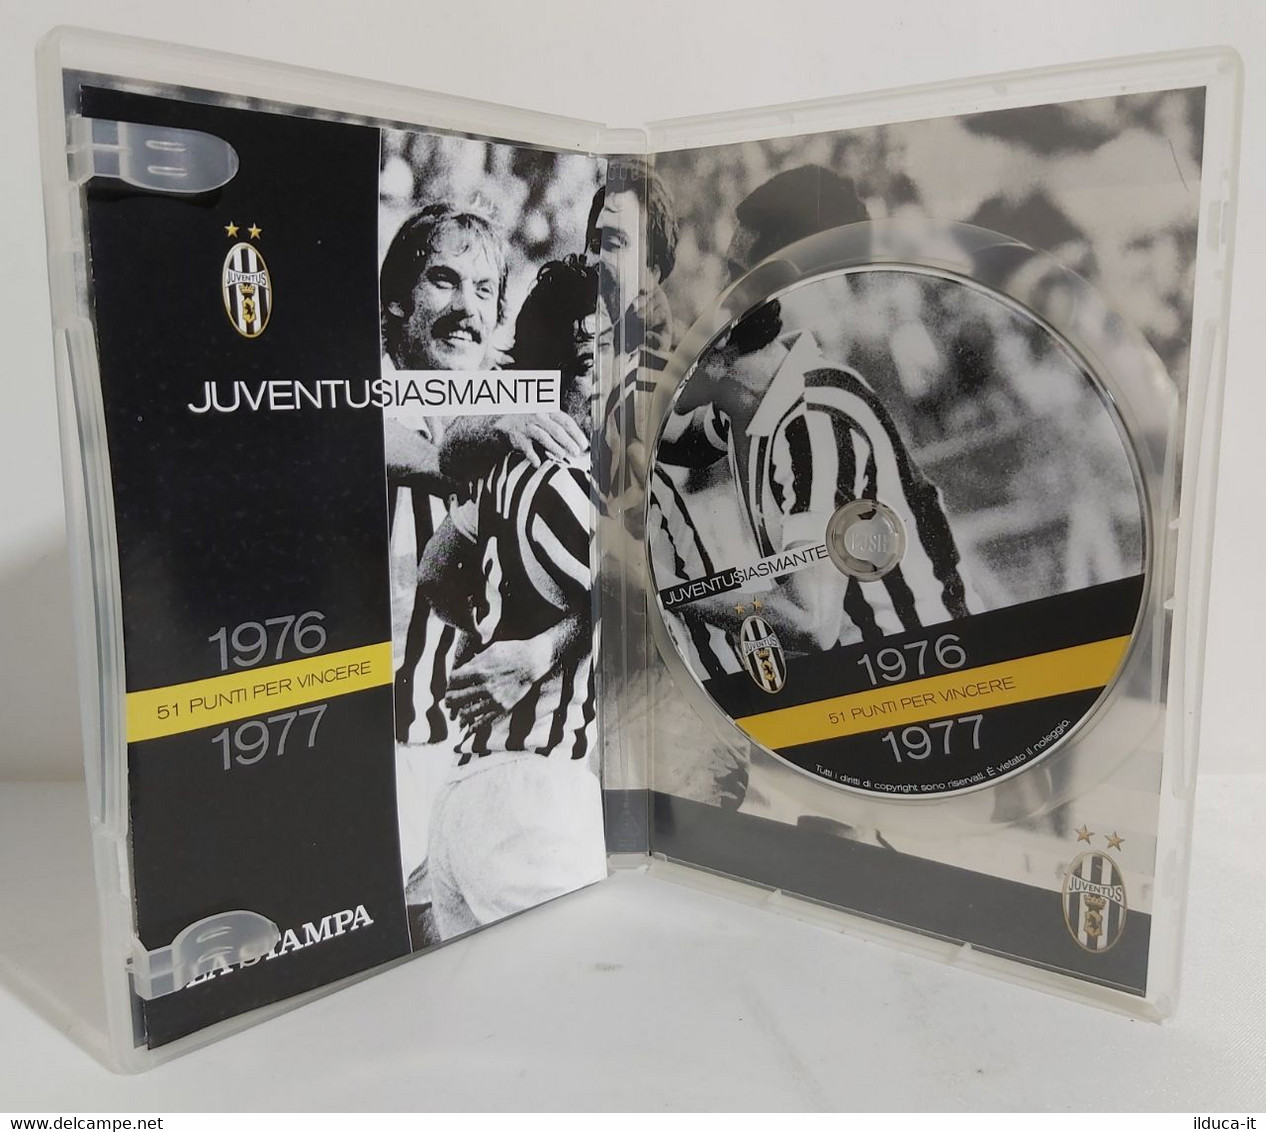 I101801 DVD Juventus - Juventusiasmante 1976-1977 - 51 Punti Per Vincere - Sports